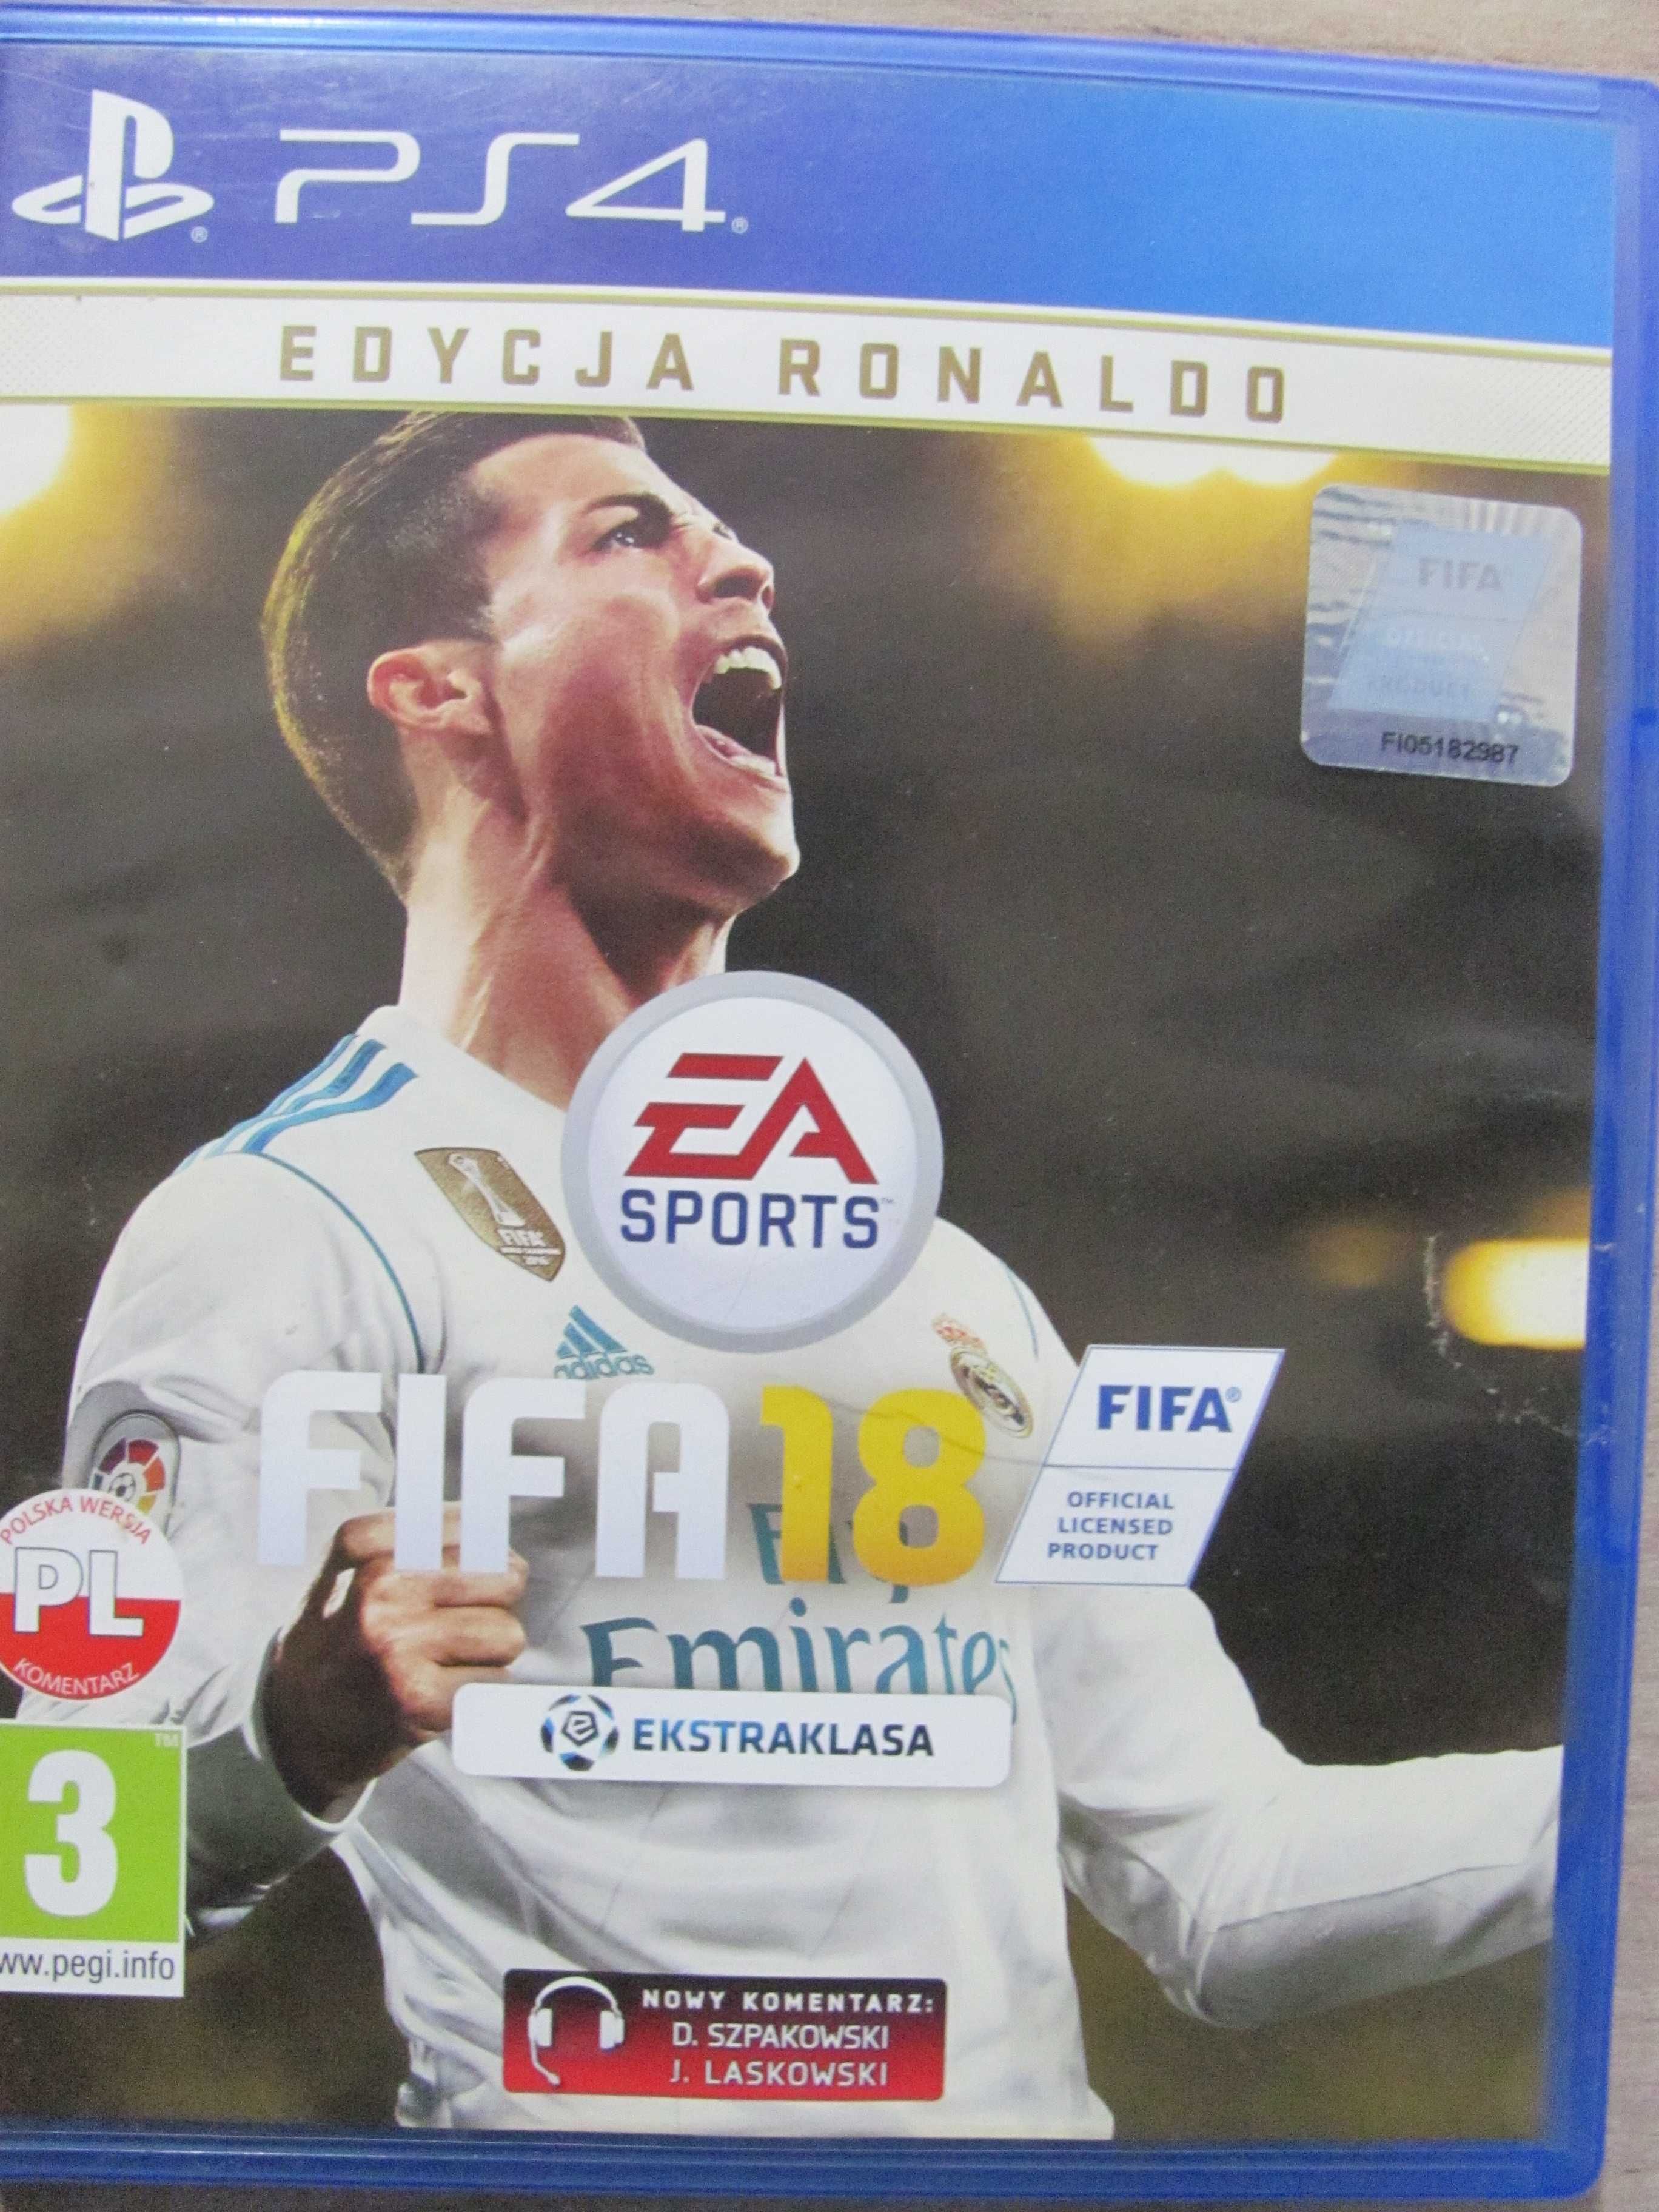 GRA FIFA 18 PS4/5 Playstation 4/5  Edycja RONALDO PL